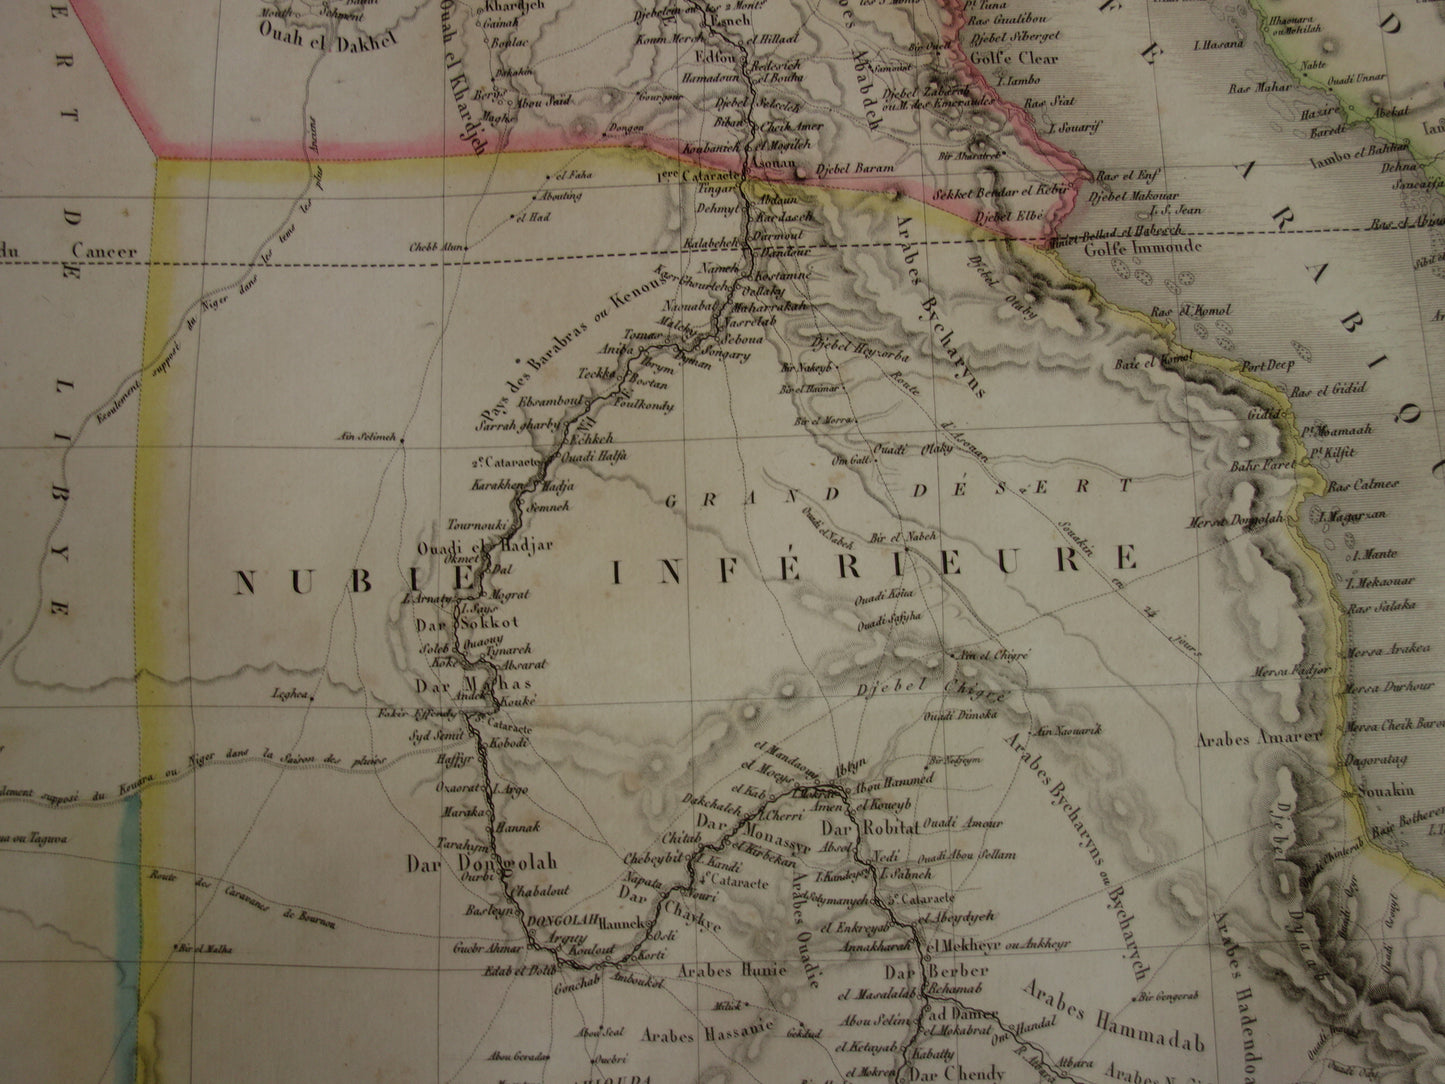 EGYPTE grote oude kaart van Rode Zee regio uit1829 antieke landkaart Sudan, Djibouti, Ethiopië en Saoedi-Arabië met jaartal - vintage poster Afrika